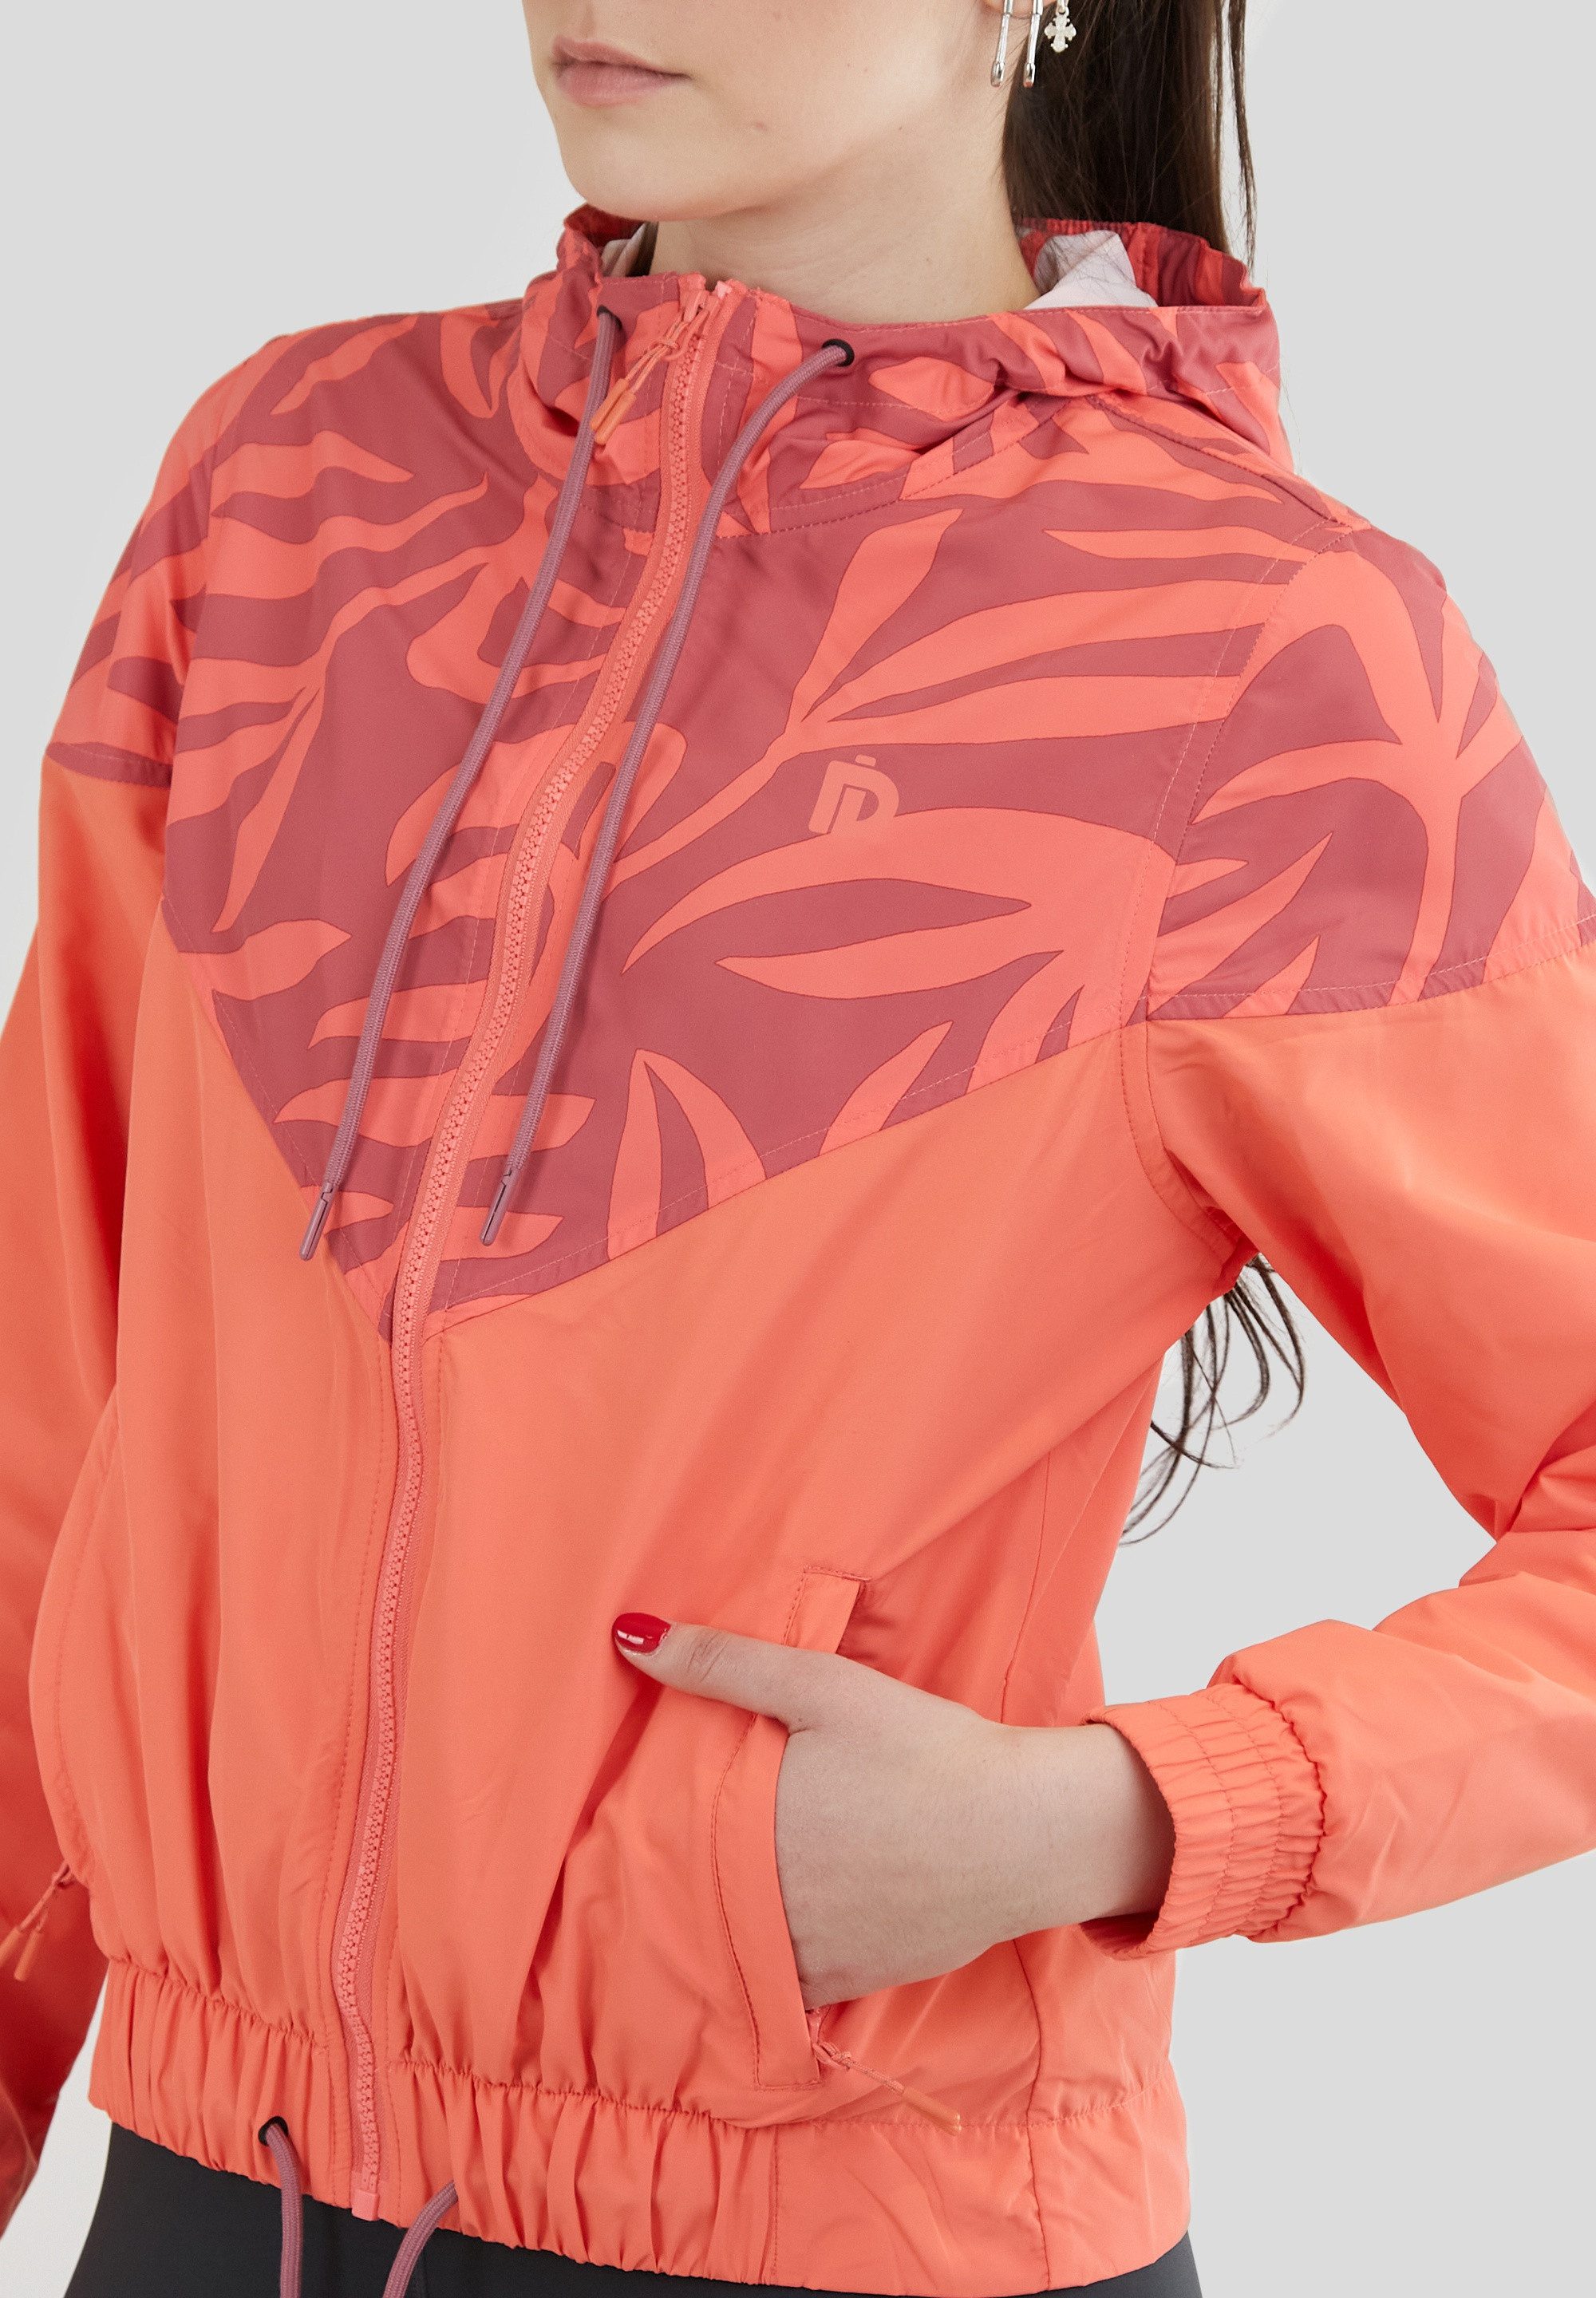 Fundango Sakko Breeze windproof, breathable, adjustable hood, elastic hems, zipped pockets